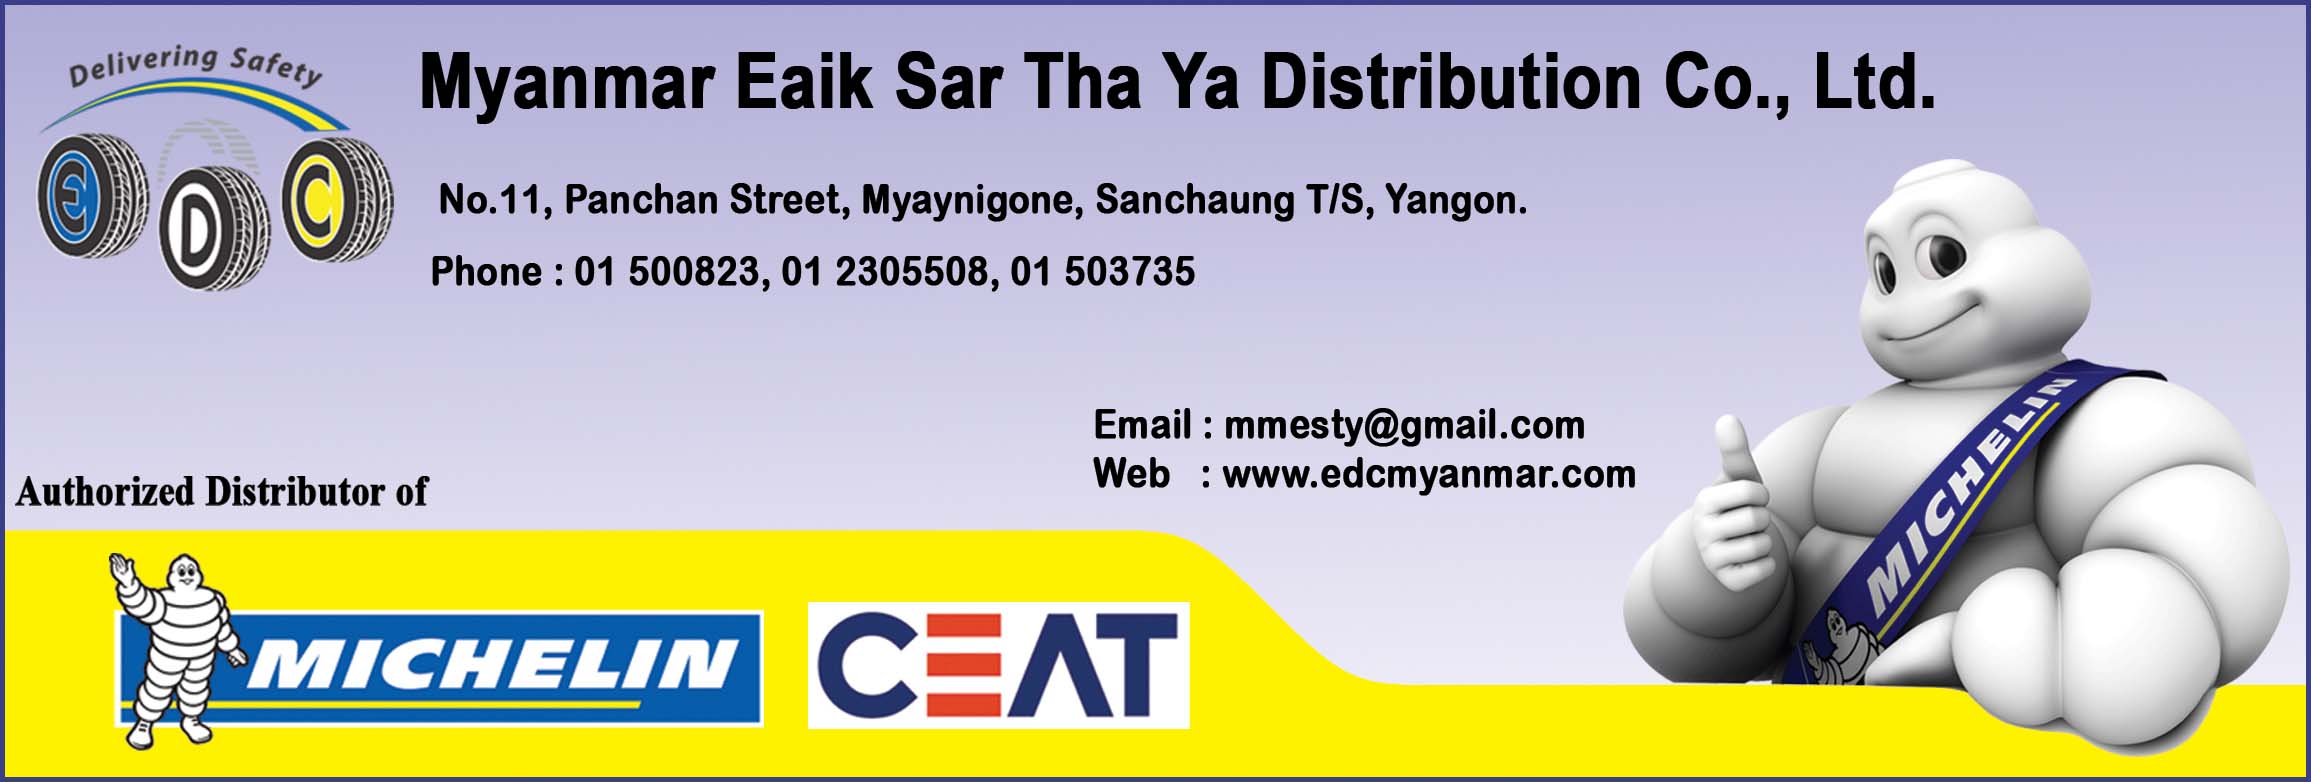 Myanmar ESTY Distribution Co., Ltd.